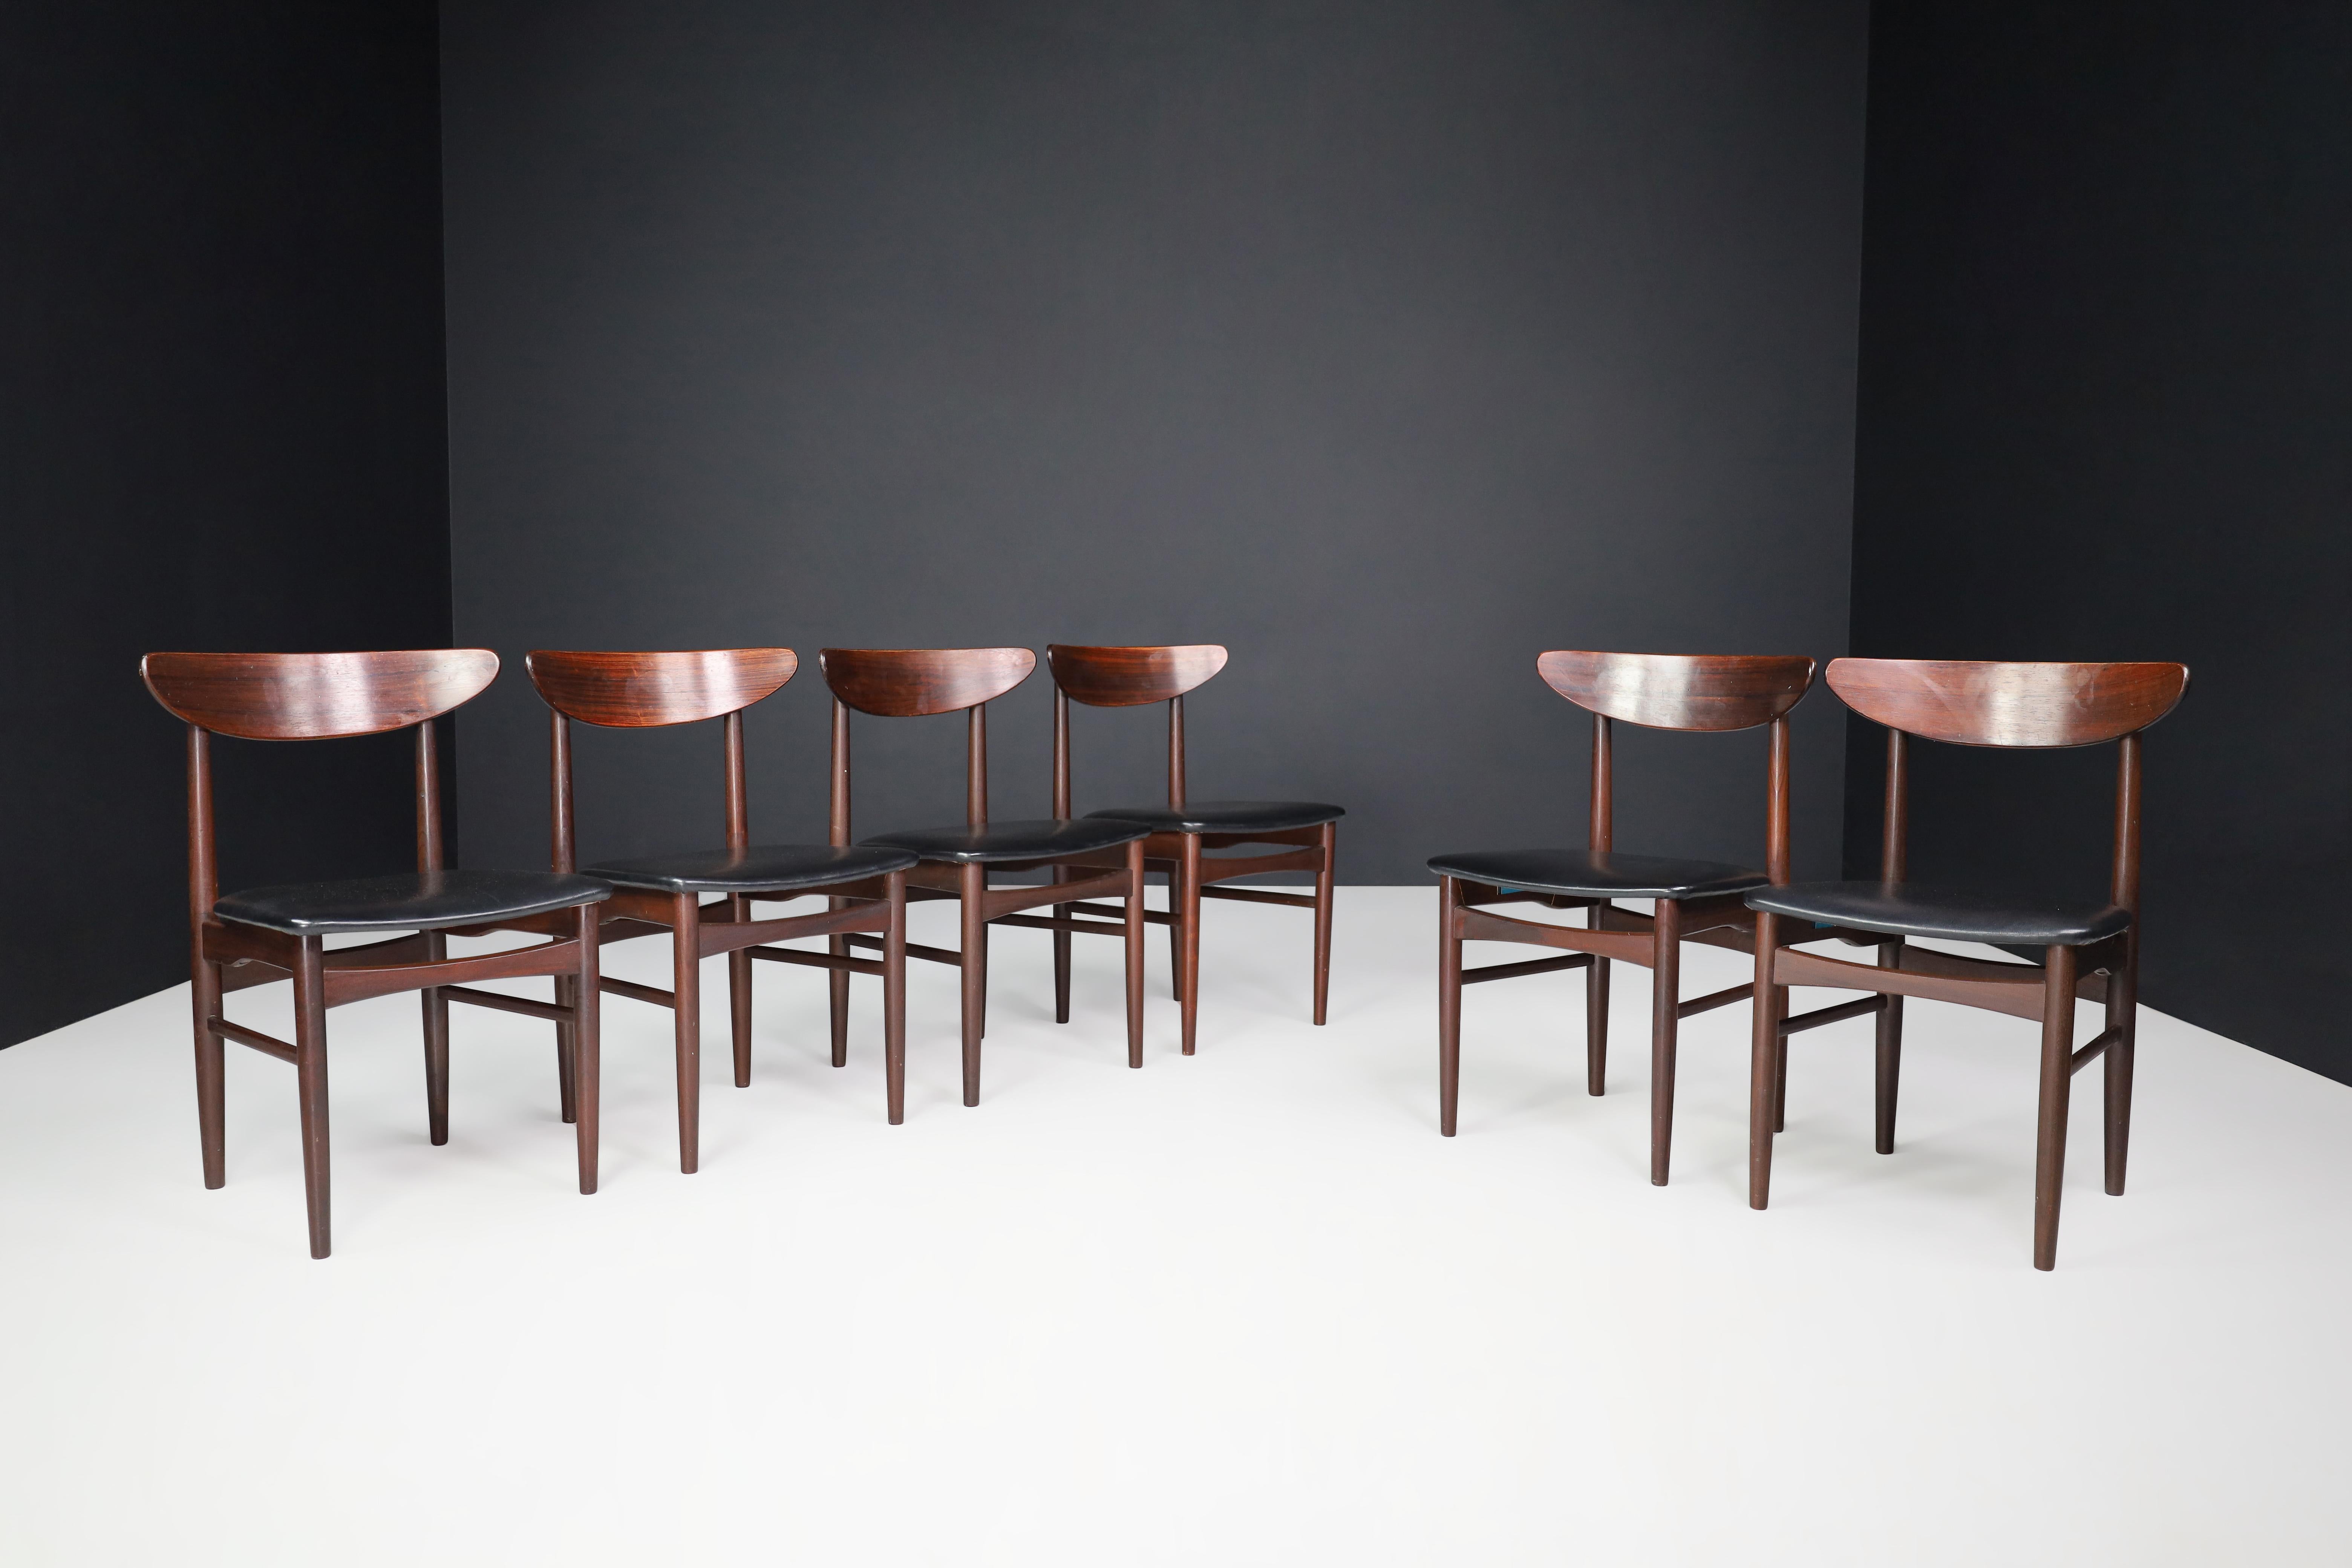 Chaises de salle à manger en bois dur et cuir noir de Dyrlund, Danemark années 1960.

Un ensemble de six chaises de salle à manger danoises du milieu du siècle par Dyrlund avec des cadres en bois dur et des sièges en cuir noir d'origine. Ils sont